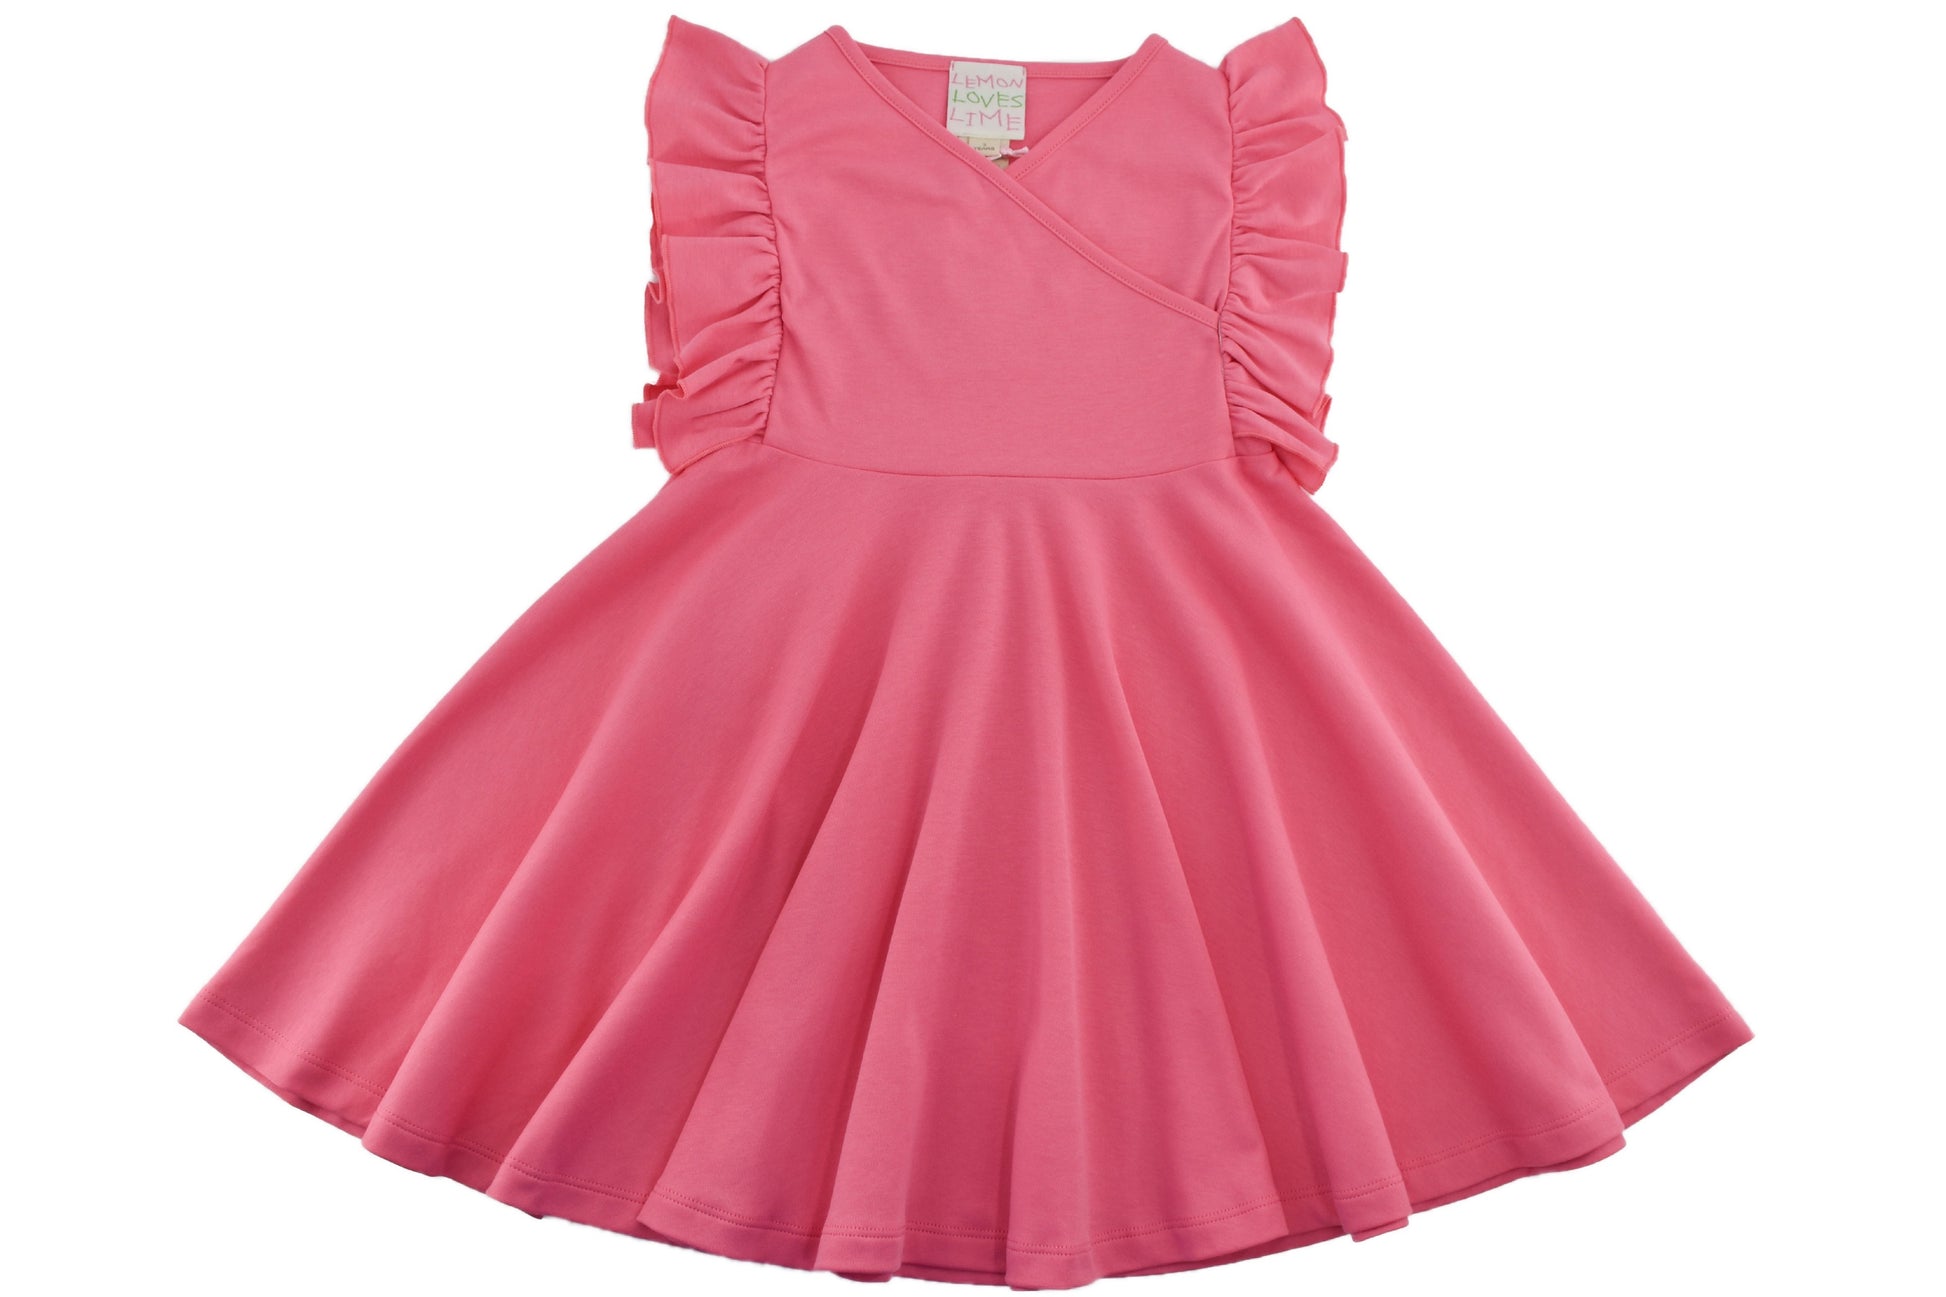 Paper Doll Dress in Pink Lemonade  - Doodlebug's Children's Boutique